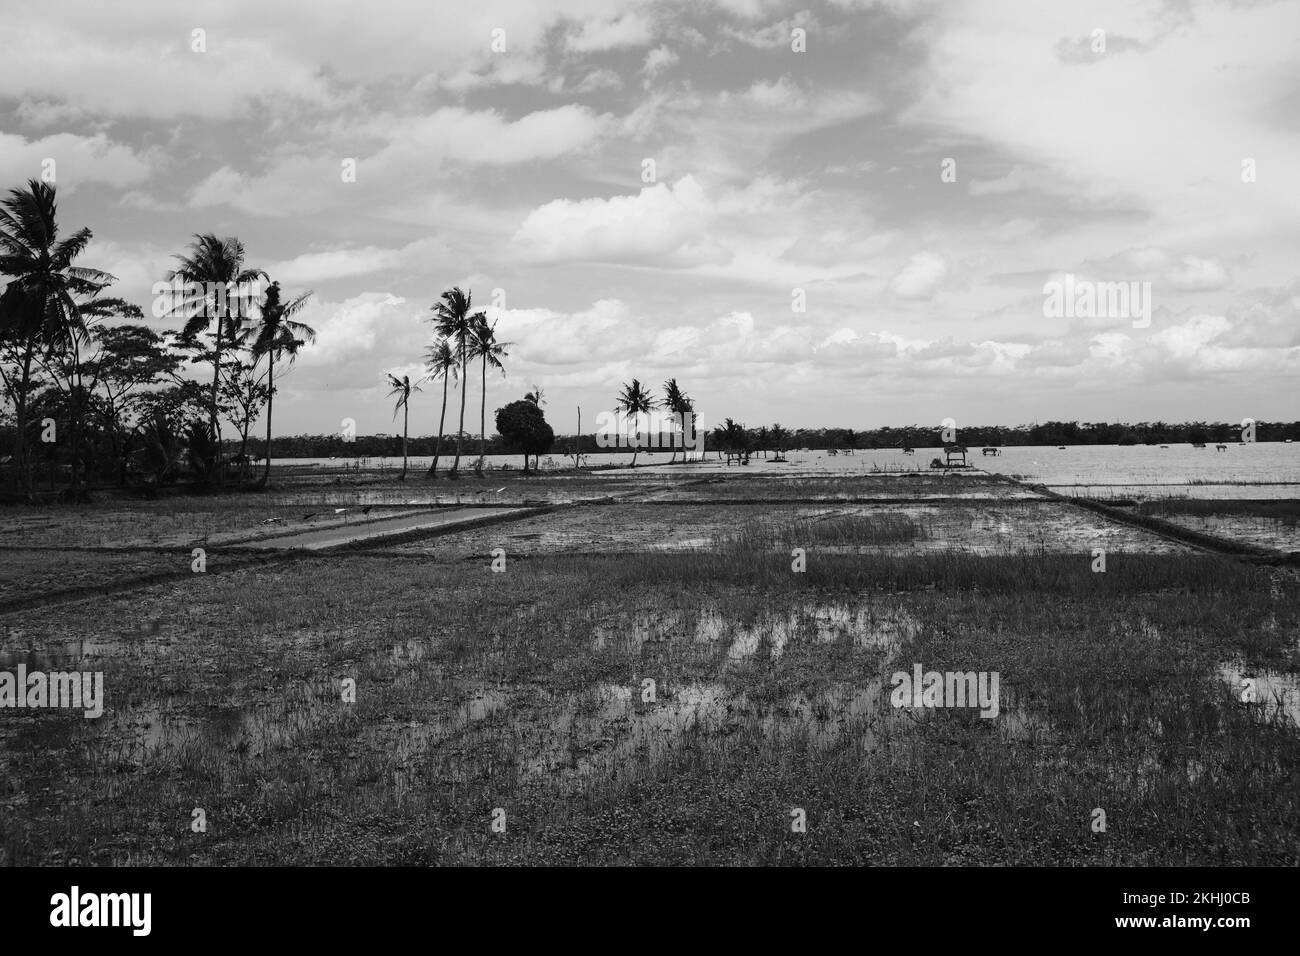 Foto in bianco e nero, foto monocromatica di risaie sommerse nell'acqua a causa delle inondazioni flash a Pangandaran - Indonesia Foto Stock